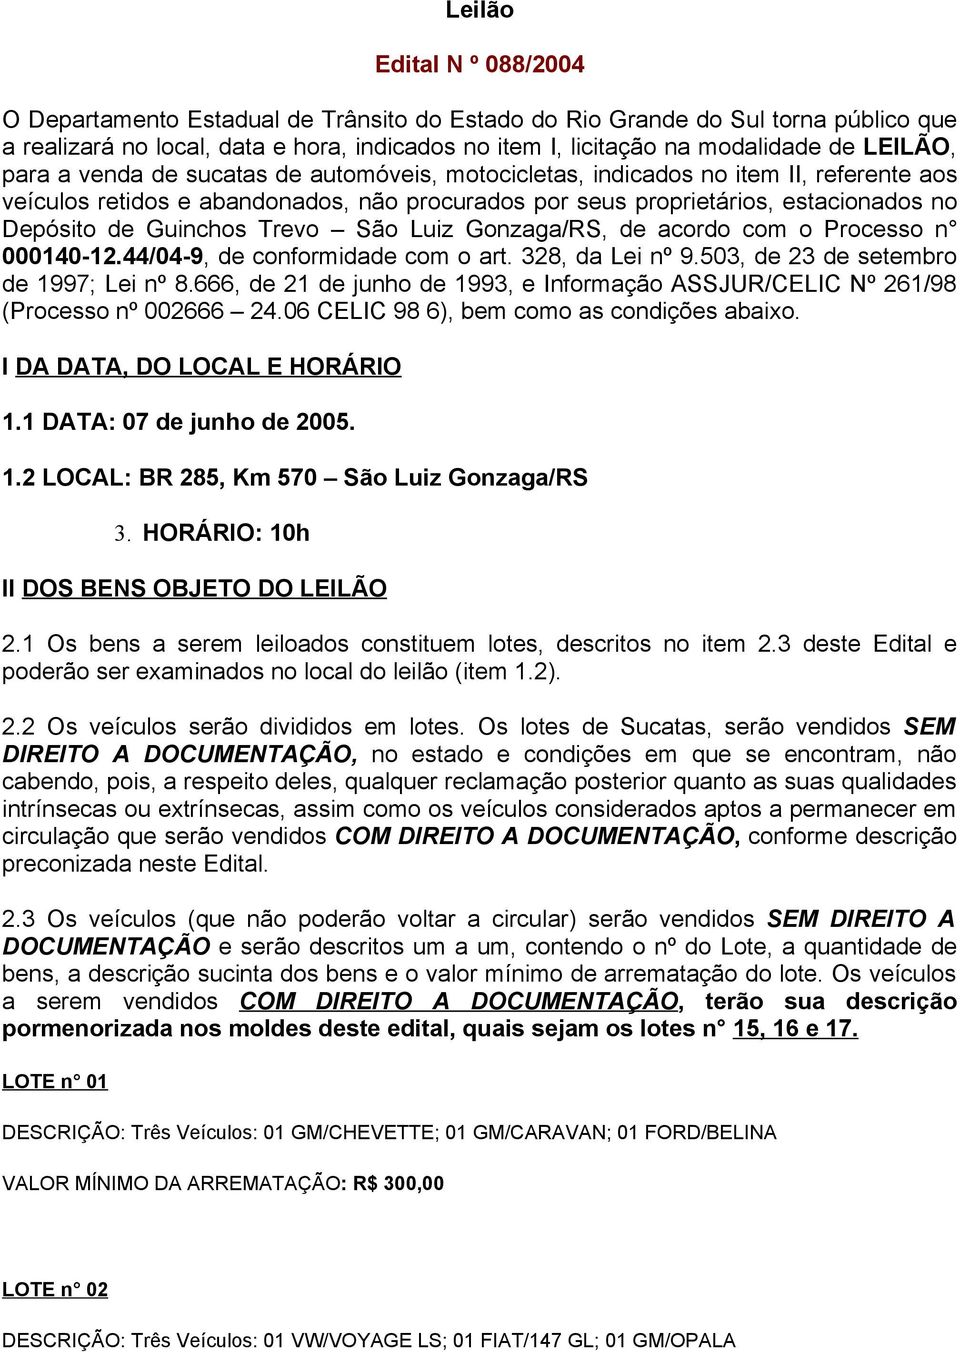 Guinchos Trevo São Luiz Gonzaga/RS, de acordo com o Processo n 000140-12.44/04-9, de conformidade com o art. 328, da Lei nº 9.503, de 23 de setembro de 1997; Lei nº 8.